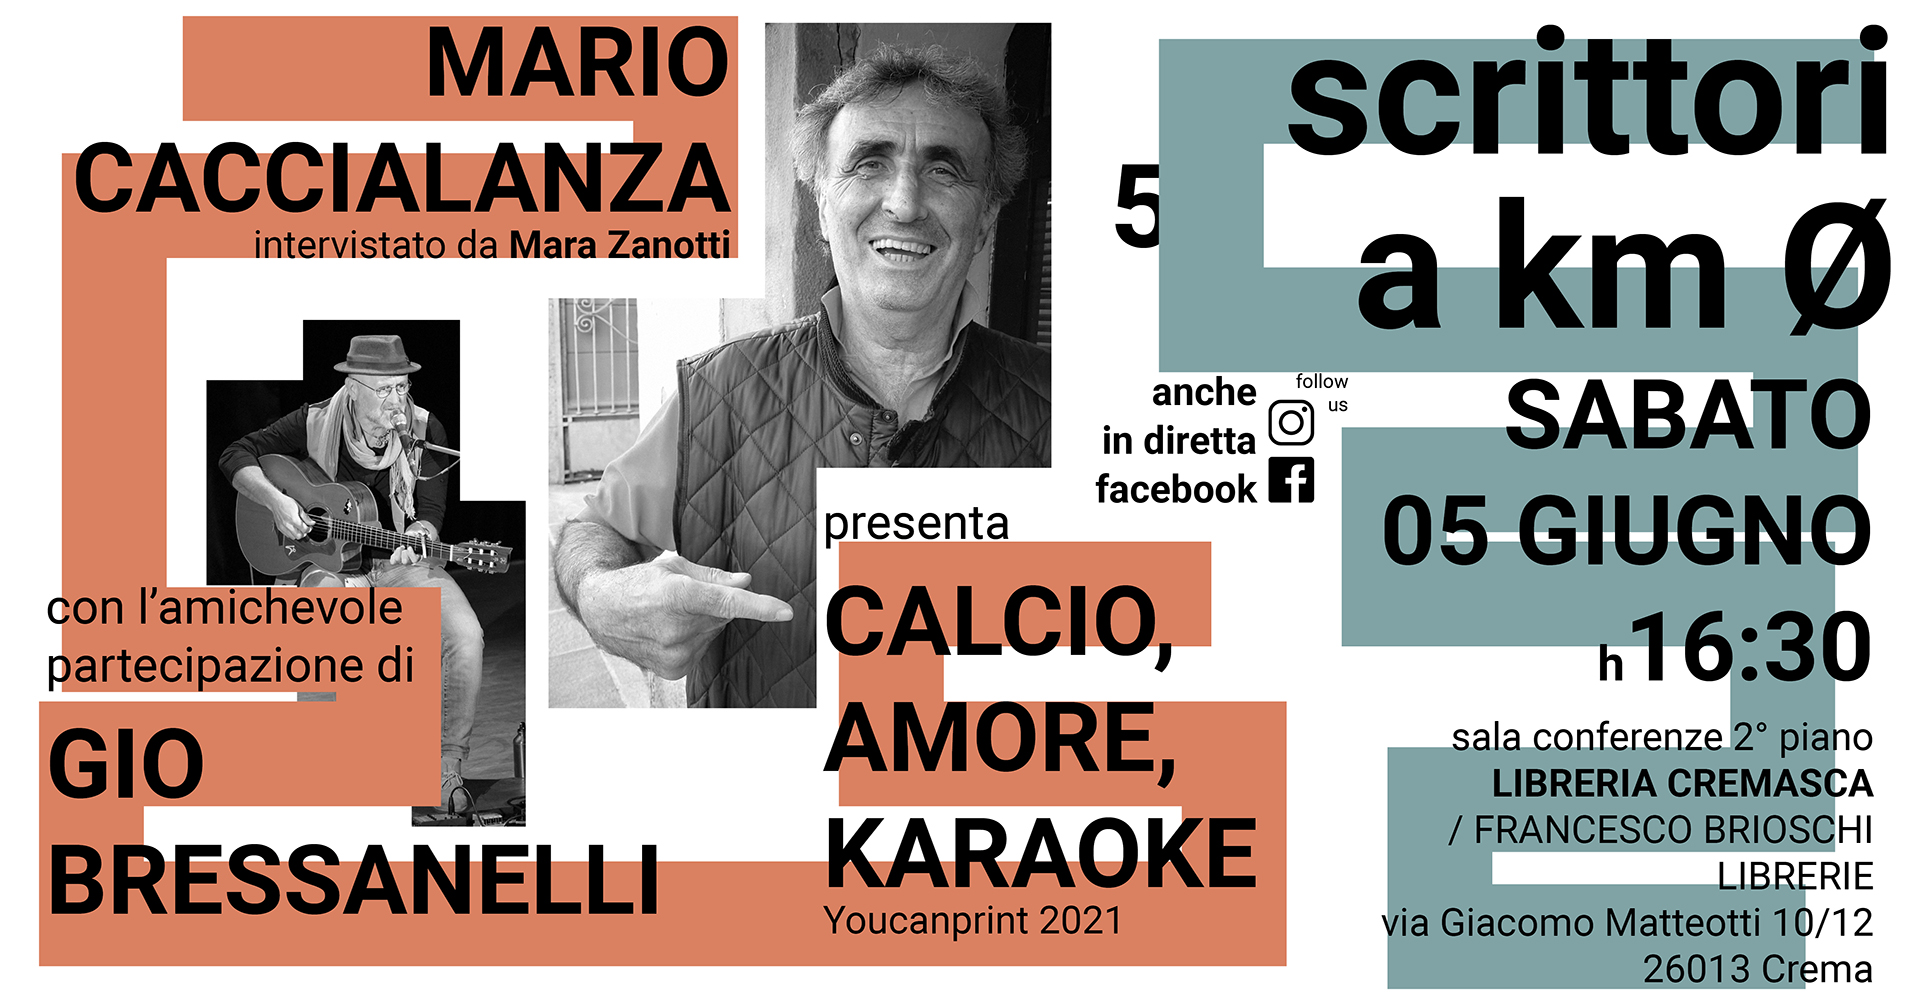 Scrittori a km 0: Mario Caccialanza